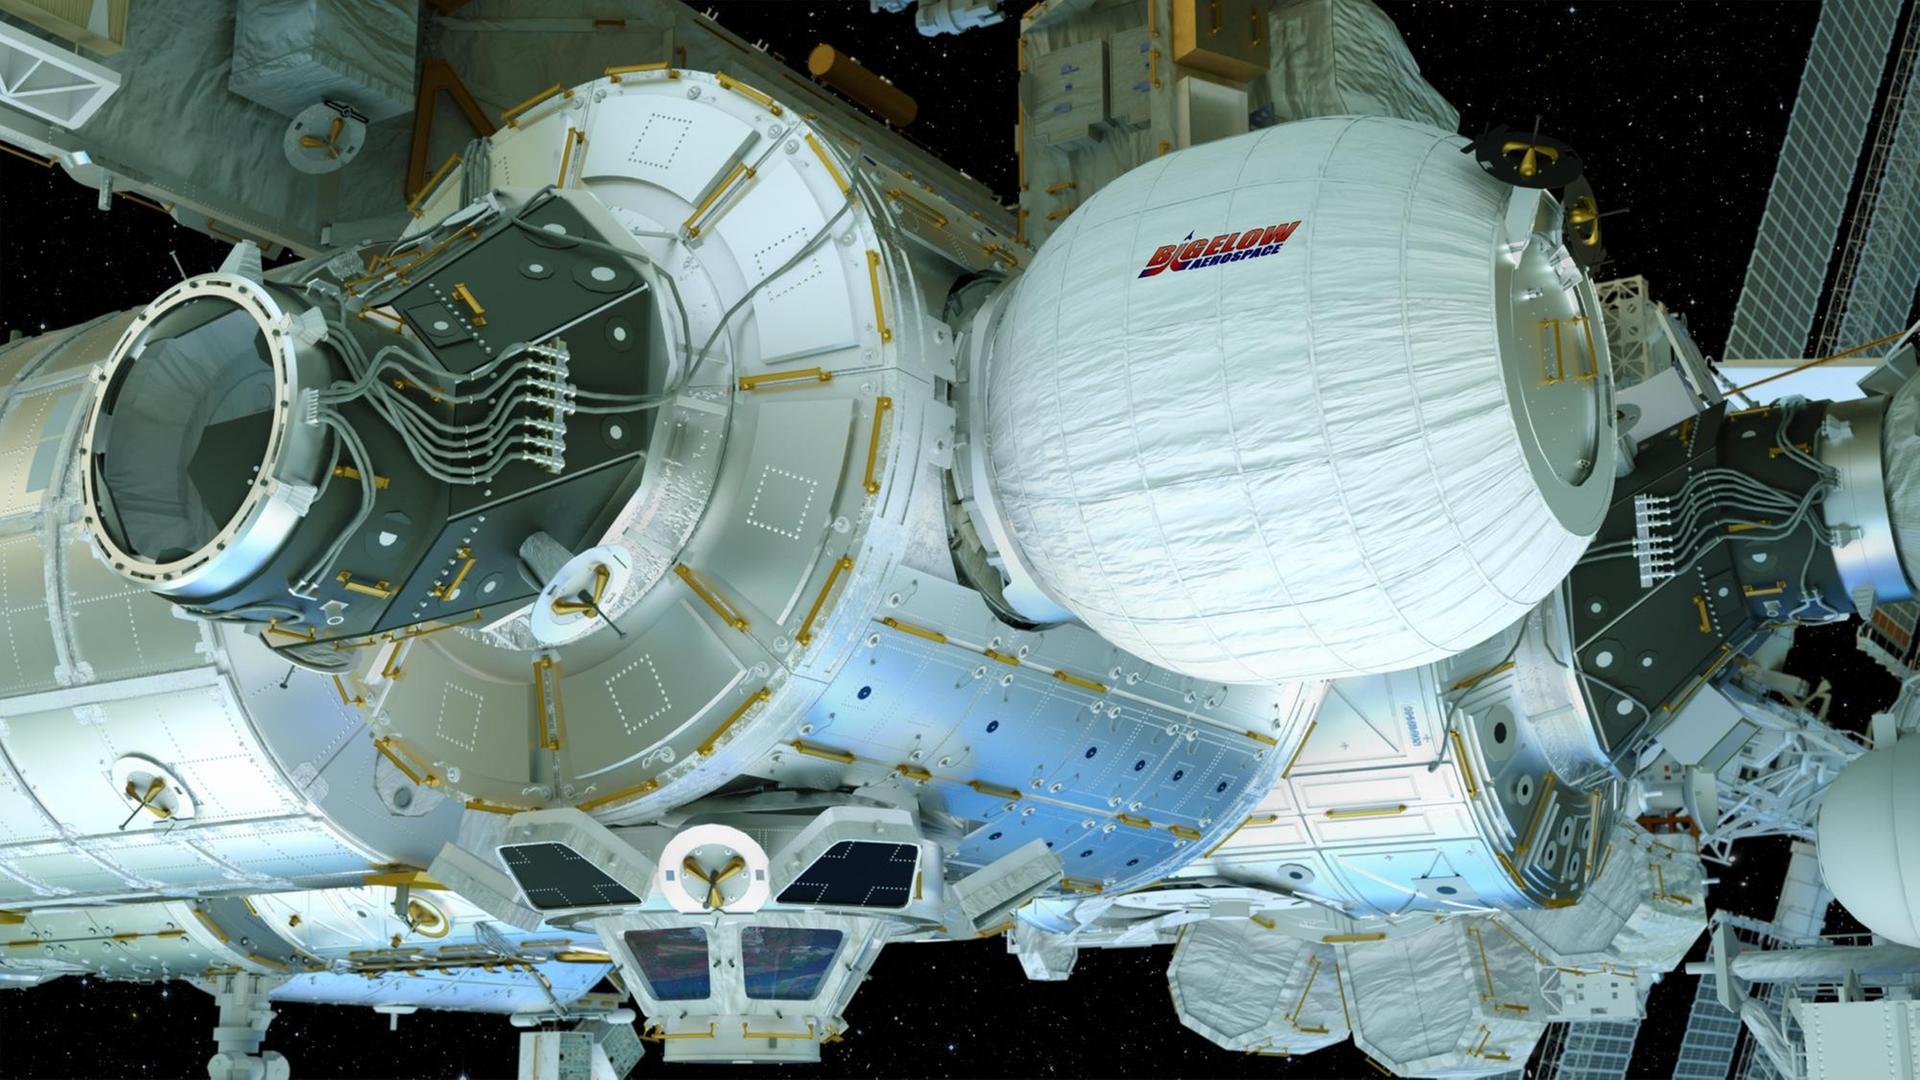 Wie ein großer Luftballon hängt das "Bigelow Expandable Activity Module" (BEAM) in dieser künstlerischen Darstellung an den anderen zylinderförmigen Modulen der Internationalen Raumstation.